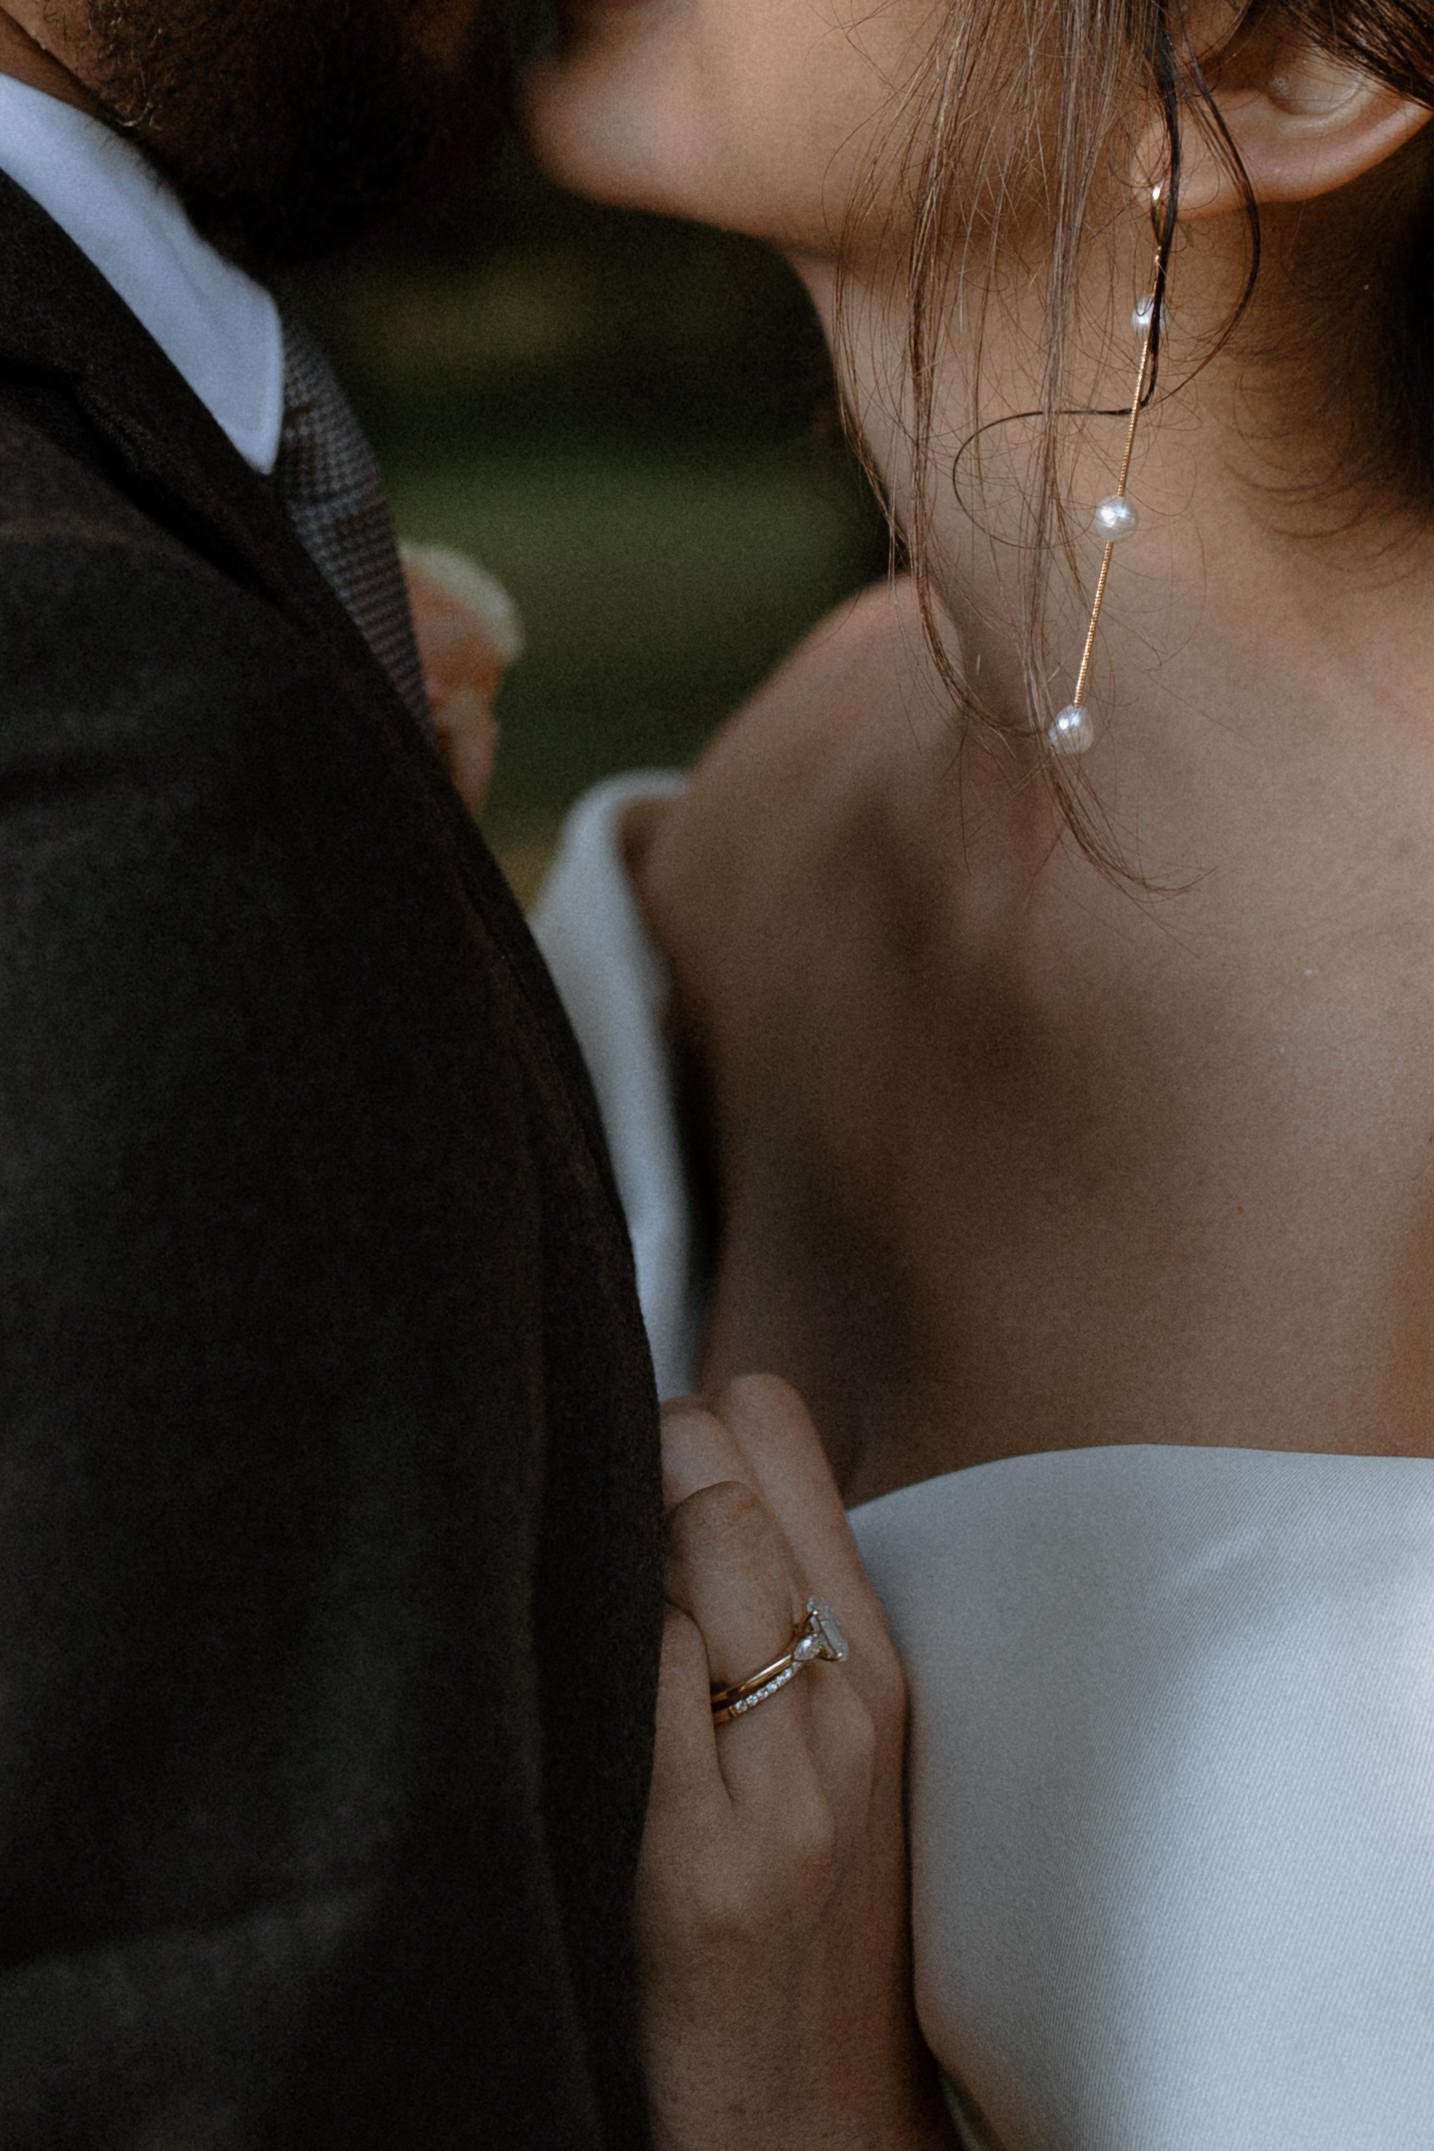 Bridal earrings detail inspo